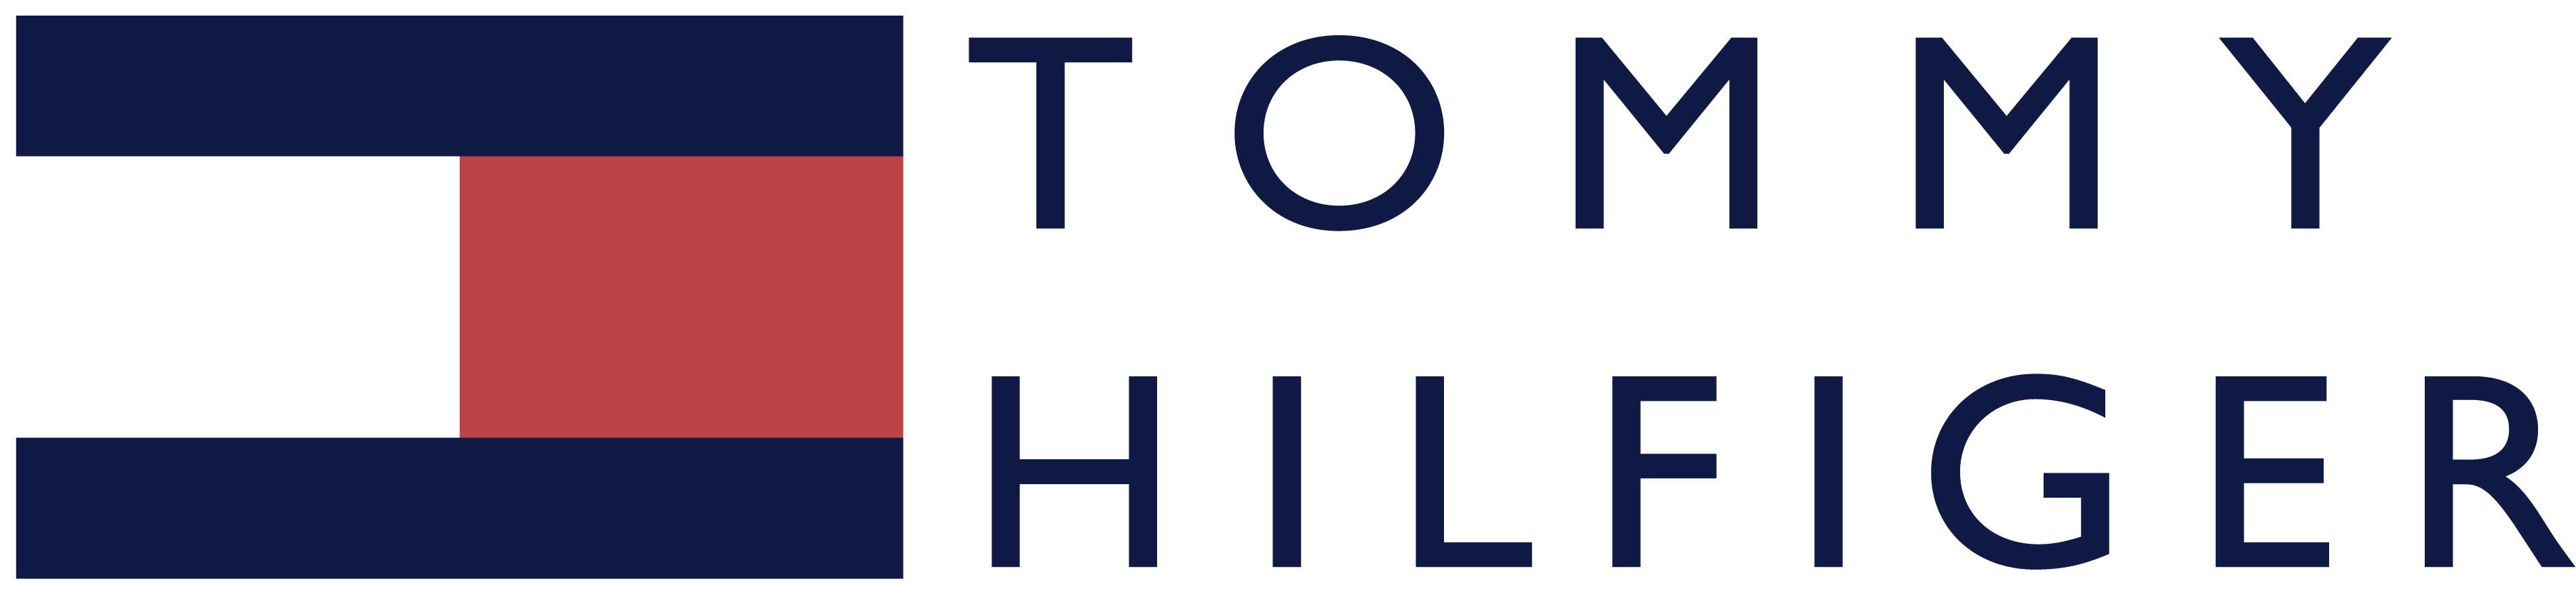 Tommy Hilfiger Logo PNG Image